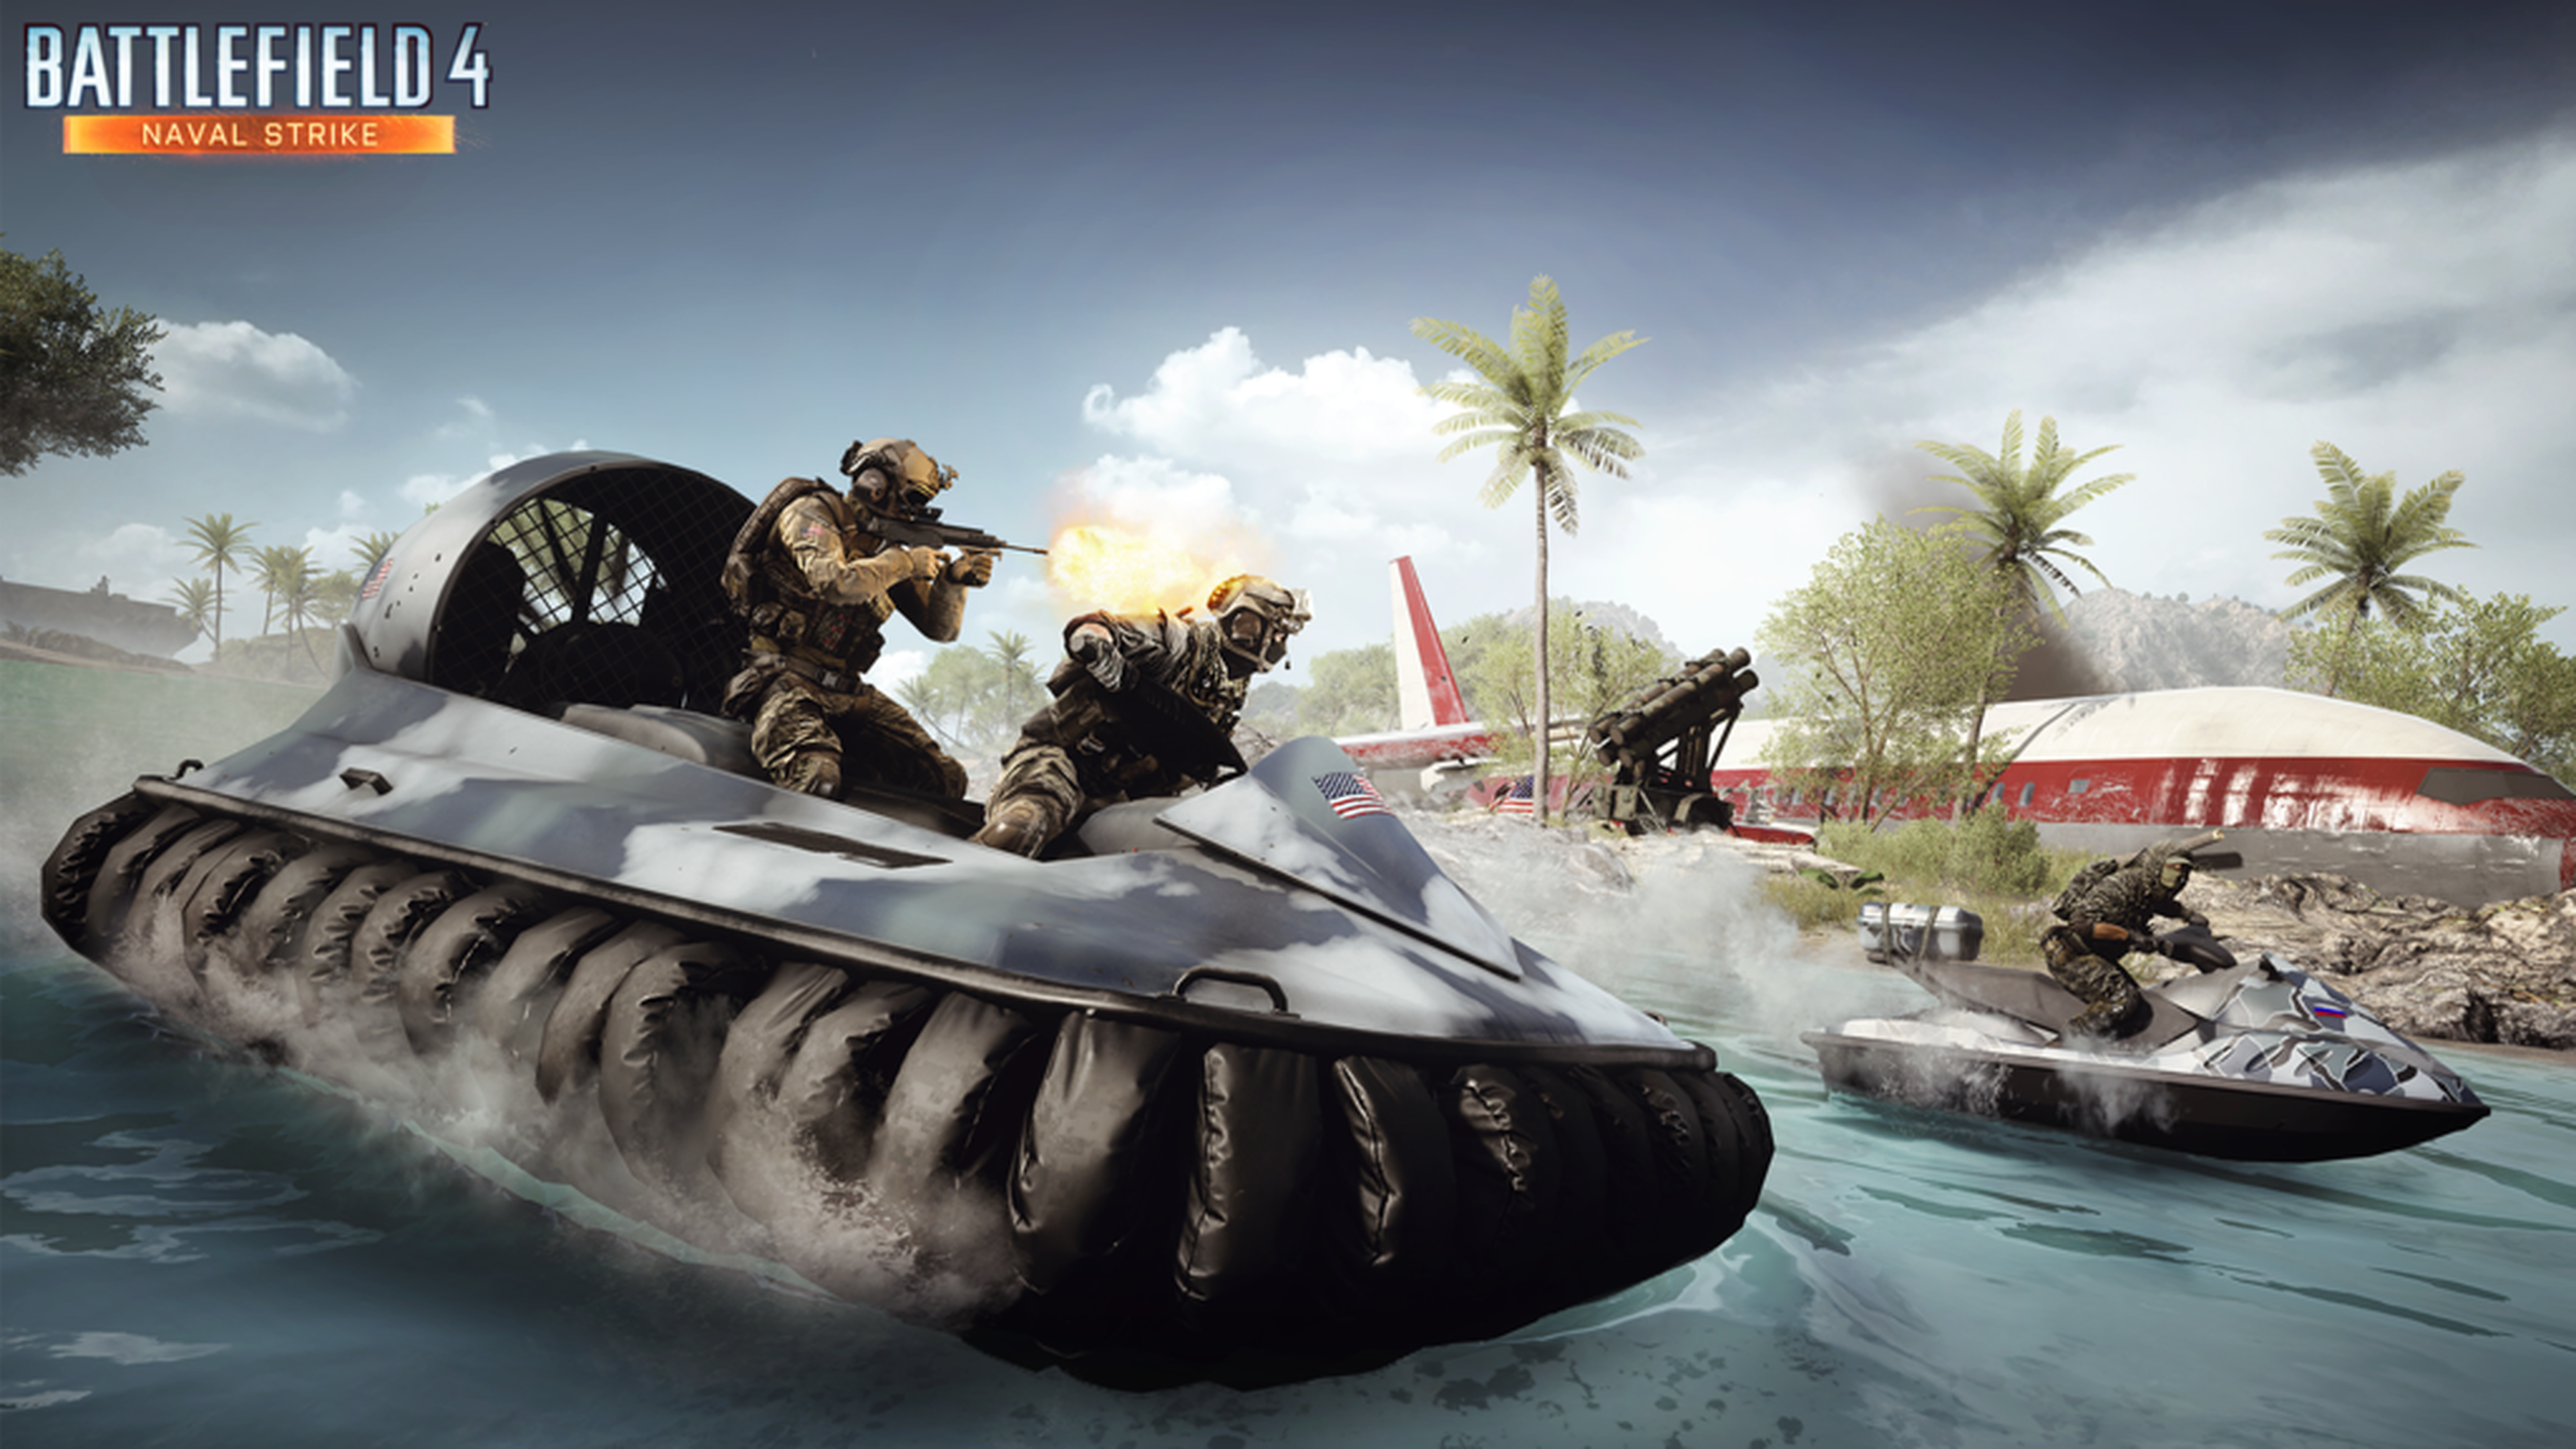 Ya disponible Battlefield 4 Naval Strike para todos los usuarios